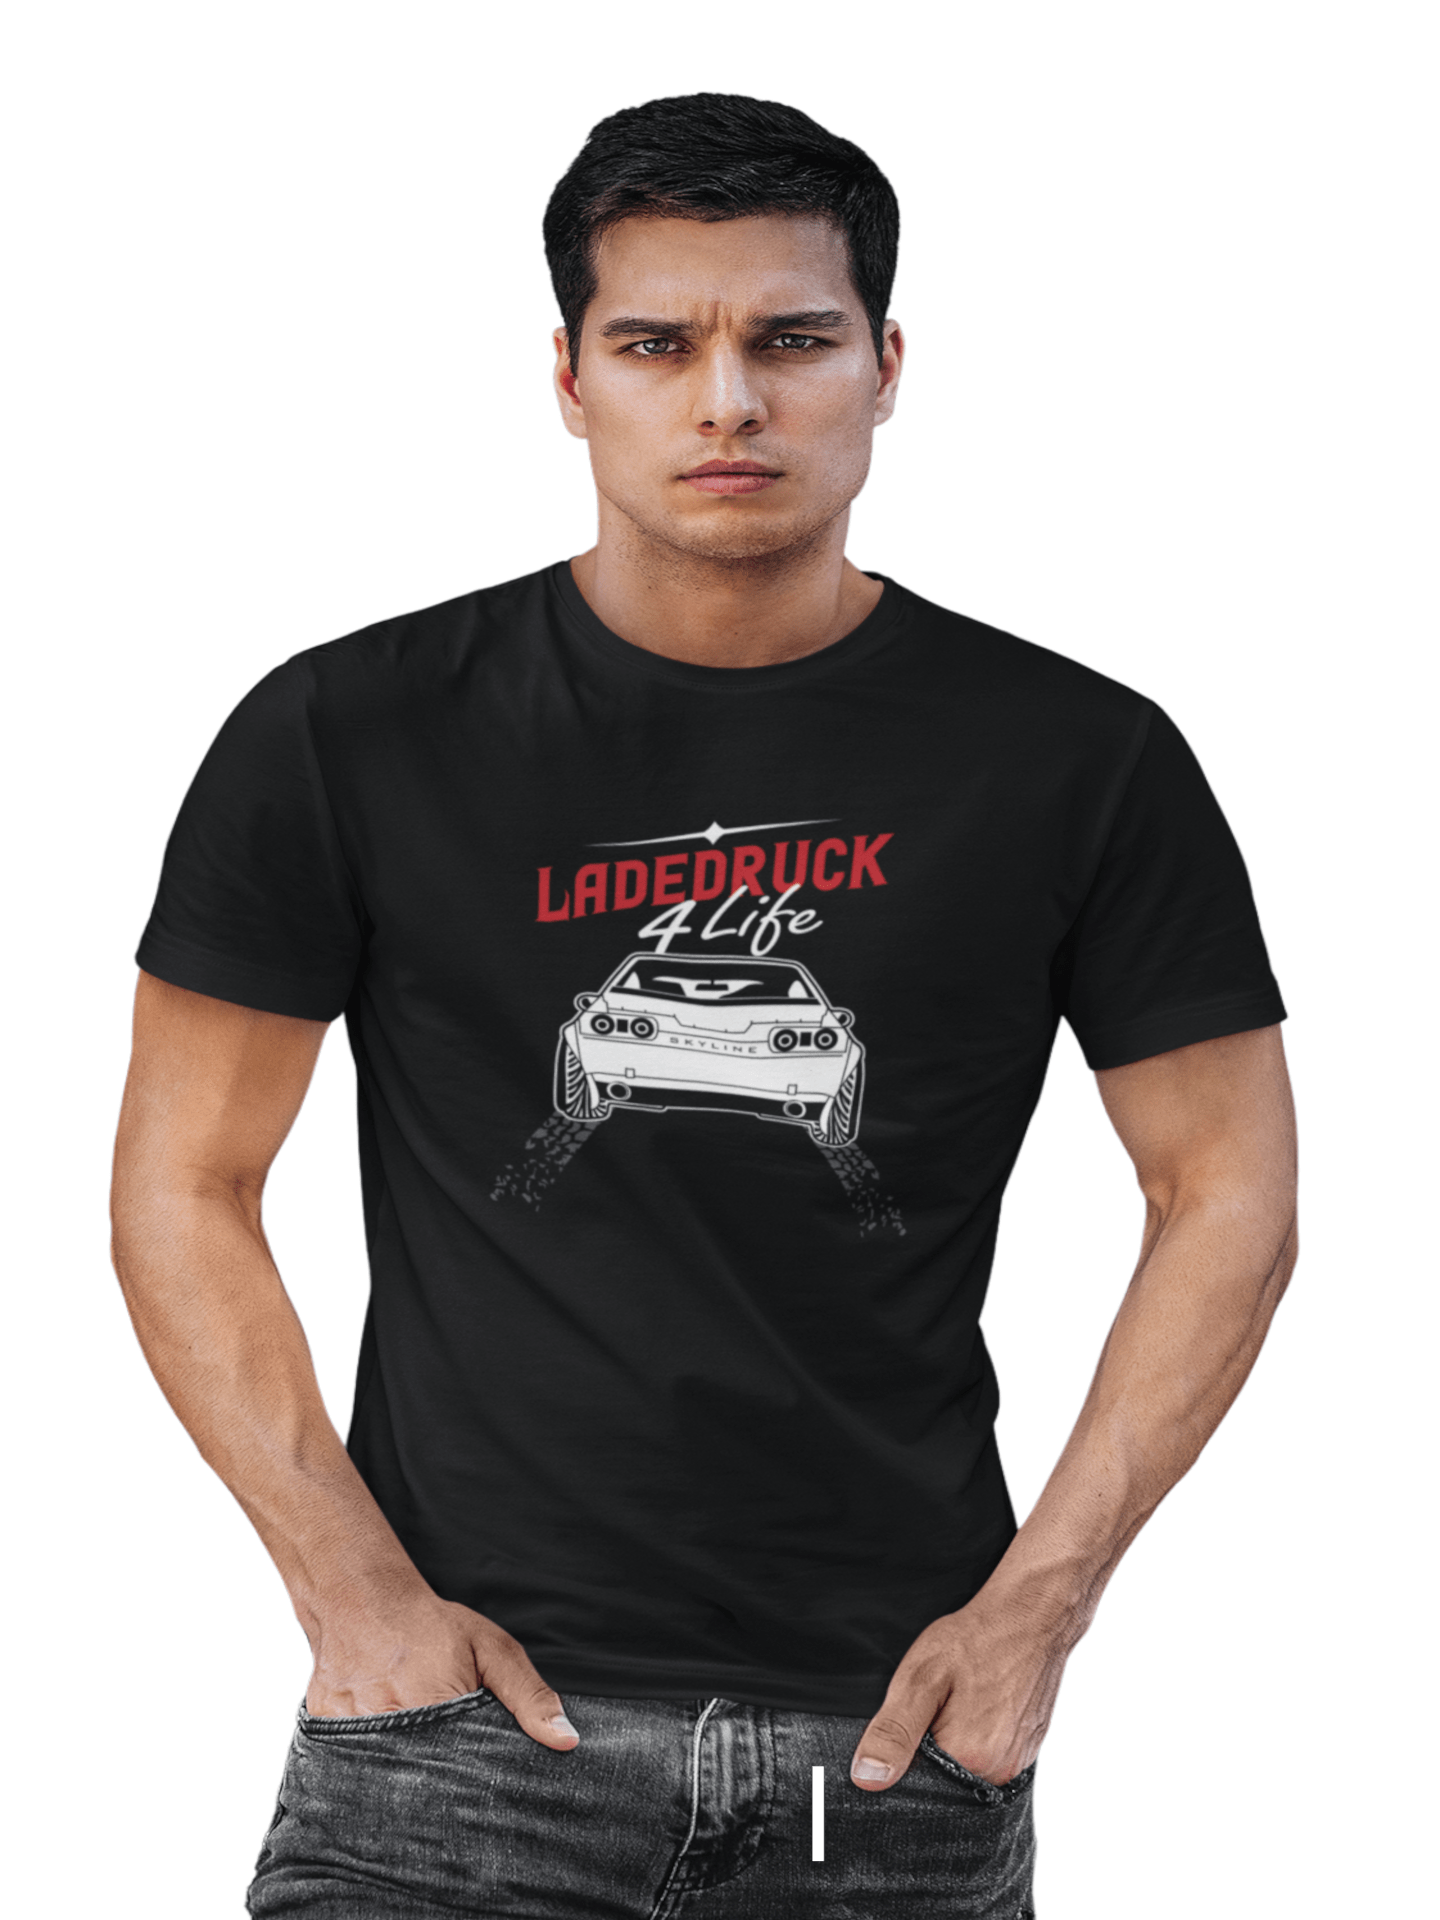 Ladedruck 4 Life - Herren T-Shirt von TurboArts